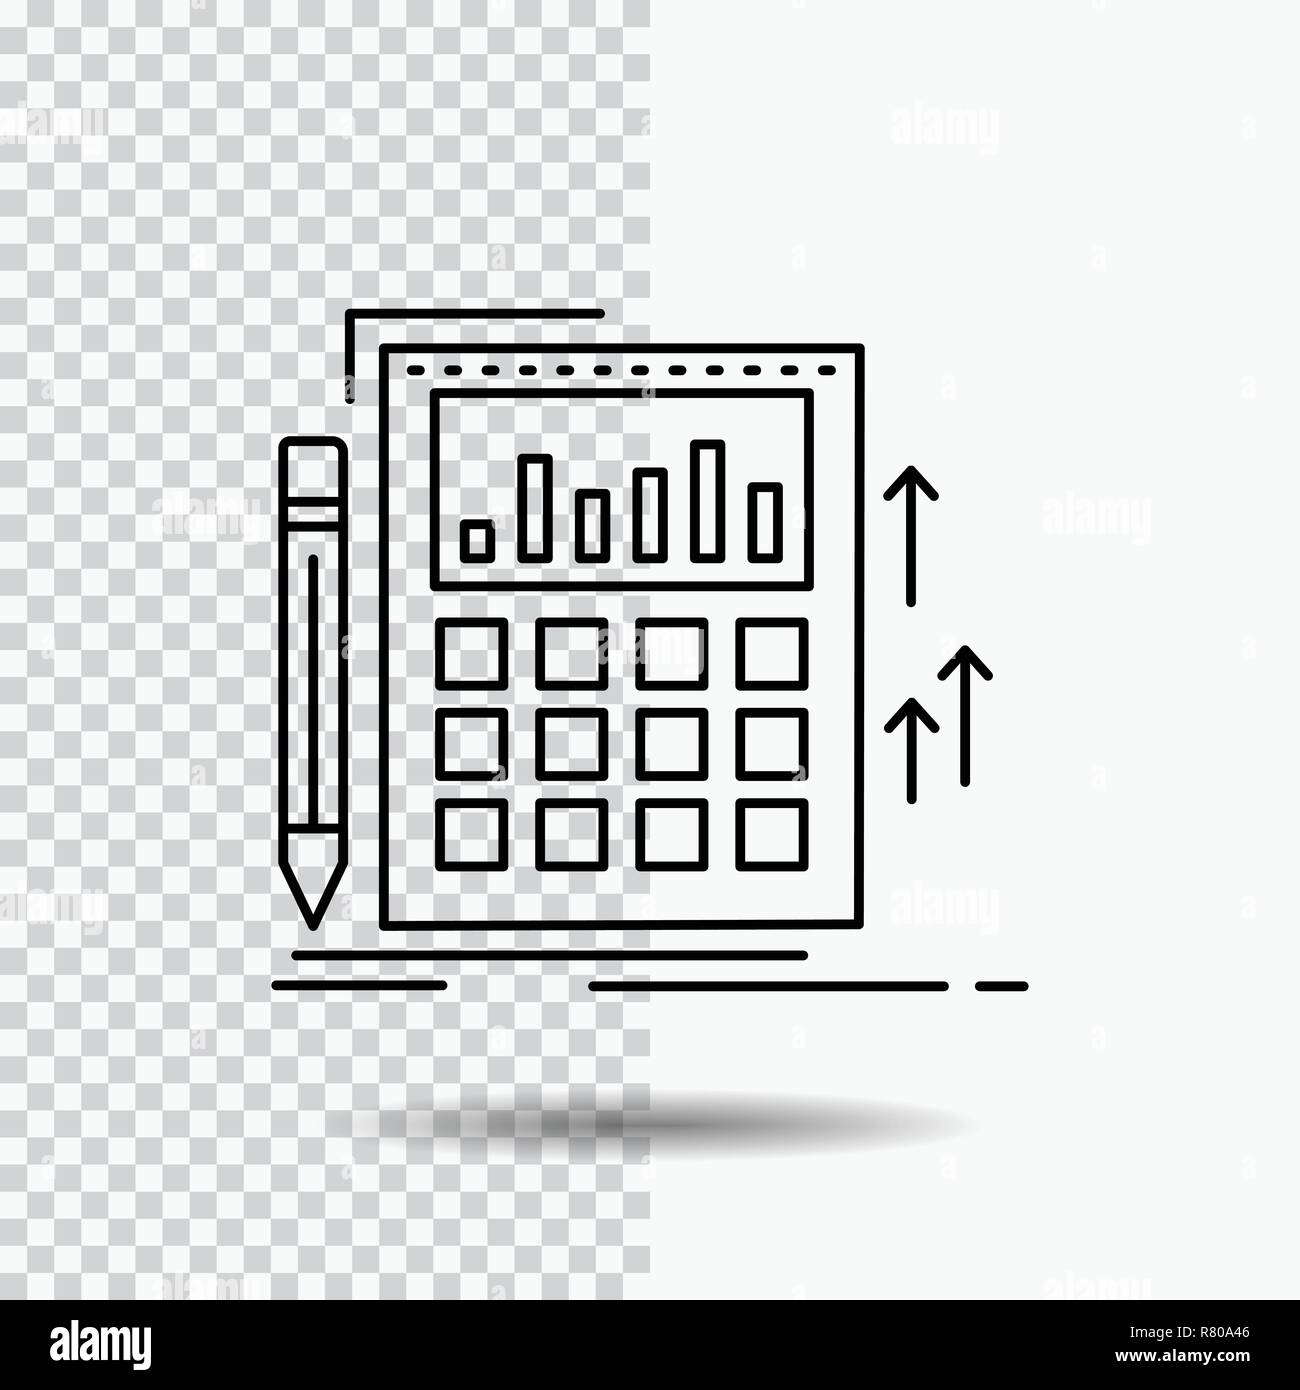 Der Rechnungsführung, der Rechnungsprüfung, Banking, Berechnung, Rechner Symbol Leitung auf transparentem Hintergrund. Schwarzes Symbol Vektor Illustration Stock Vektor